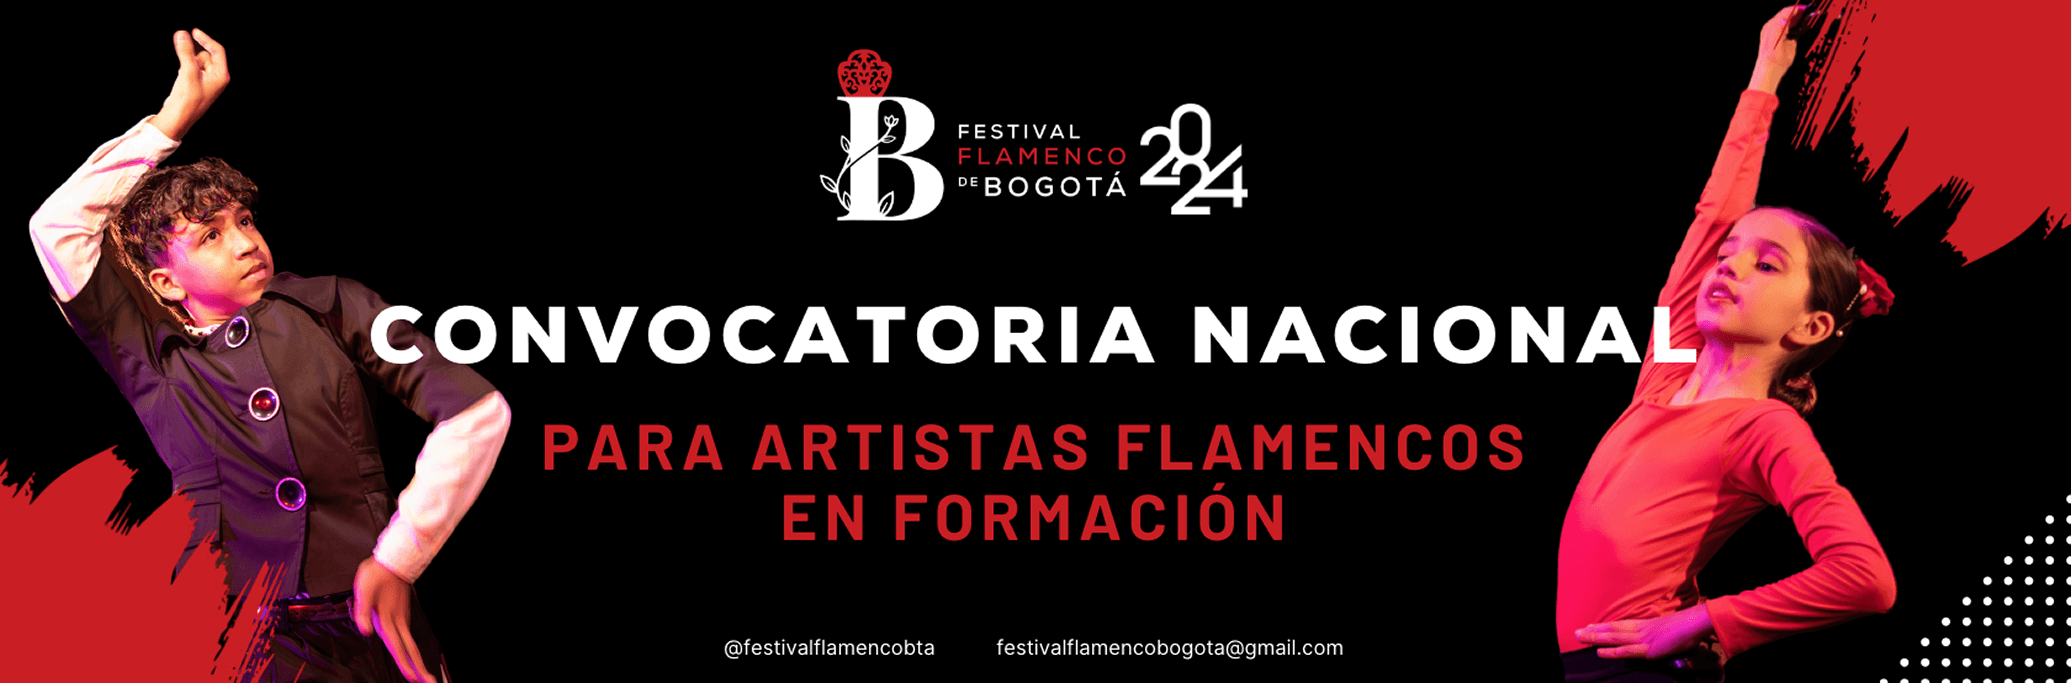 Festival de flamenco, Bogotá